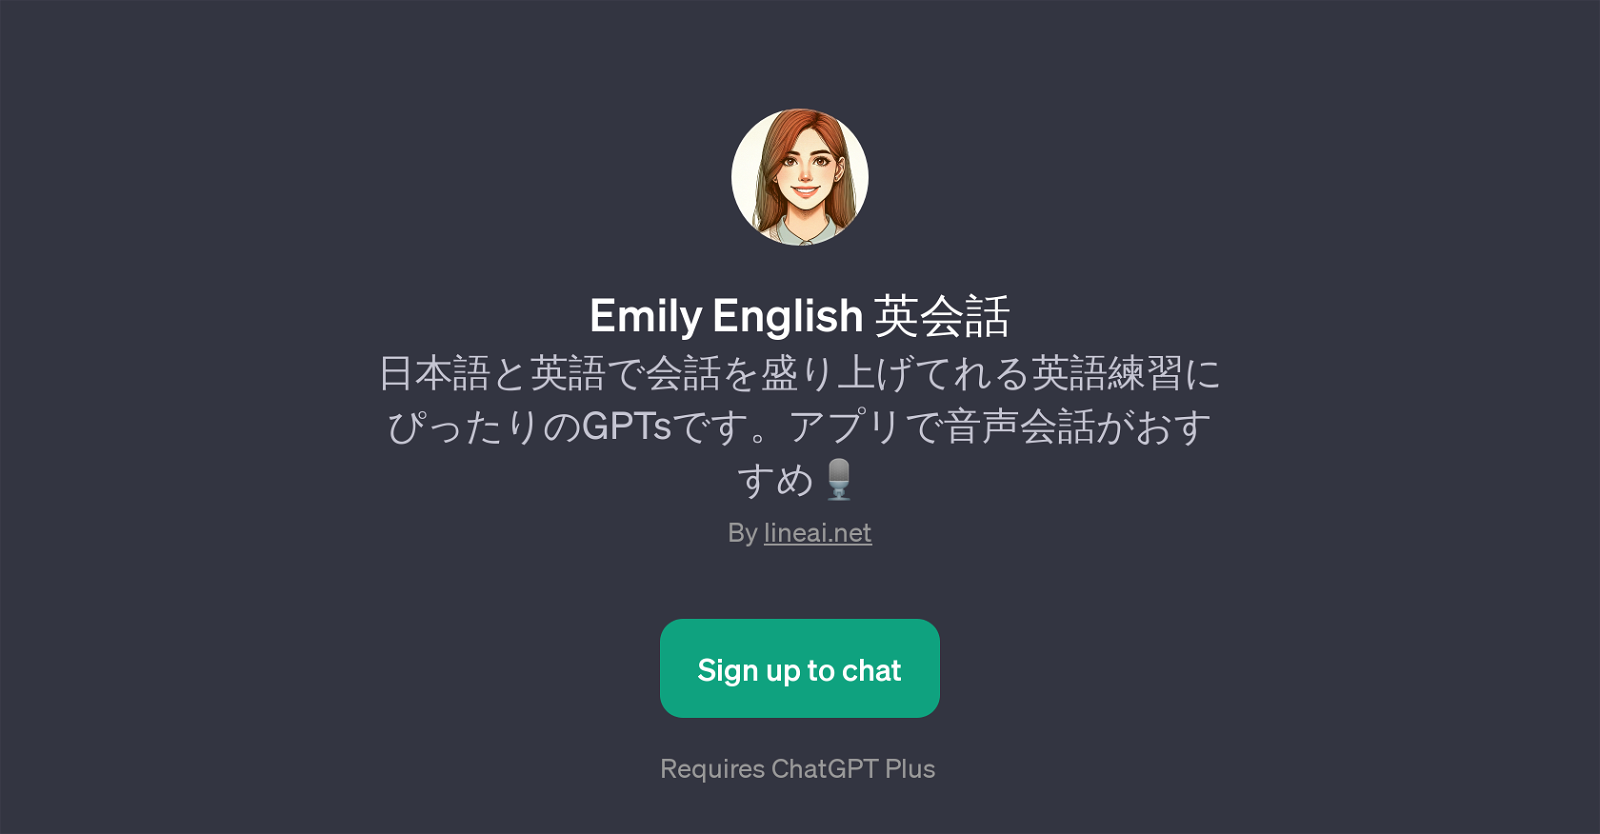 Emily English website